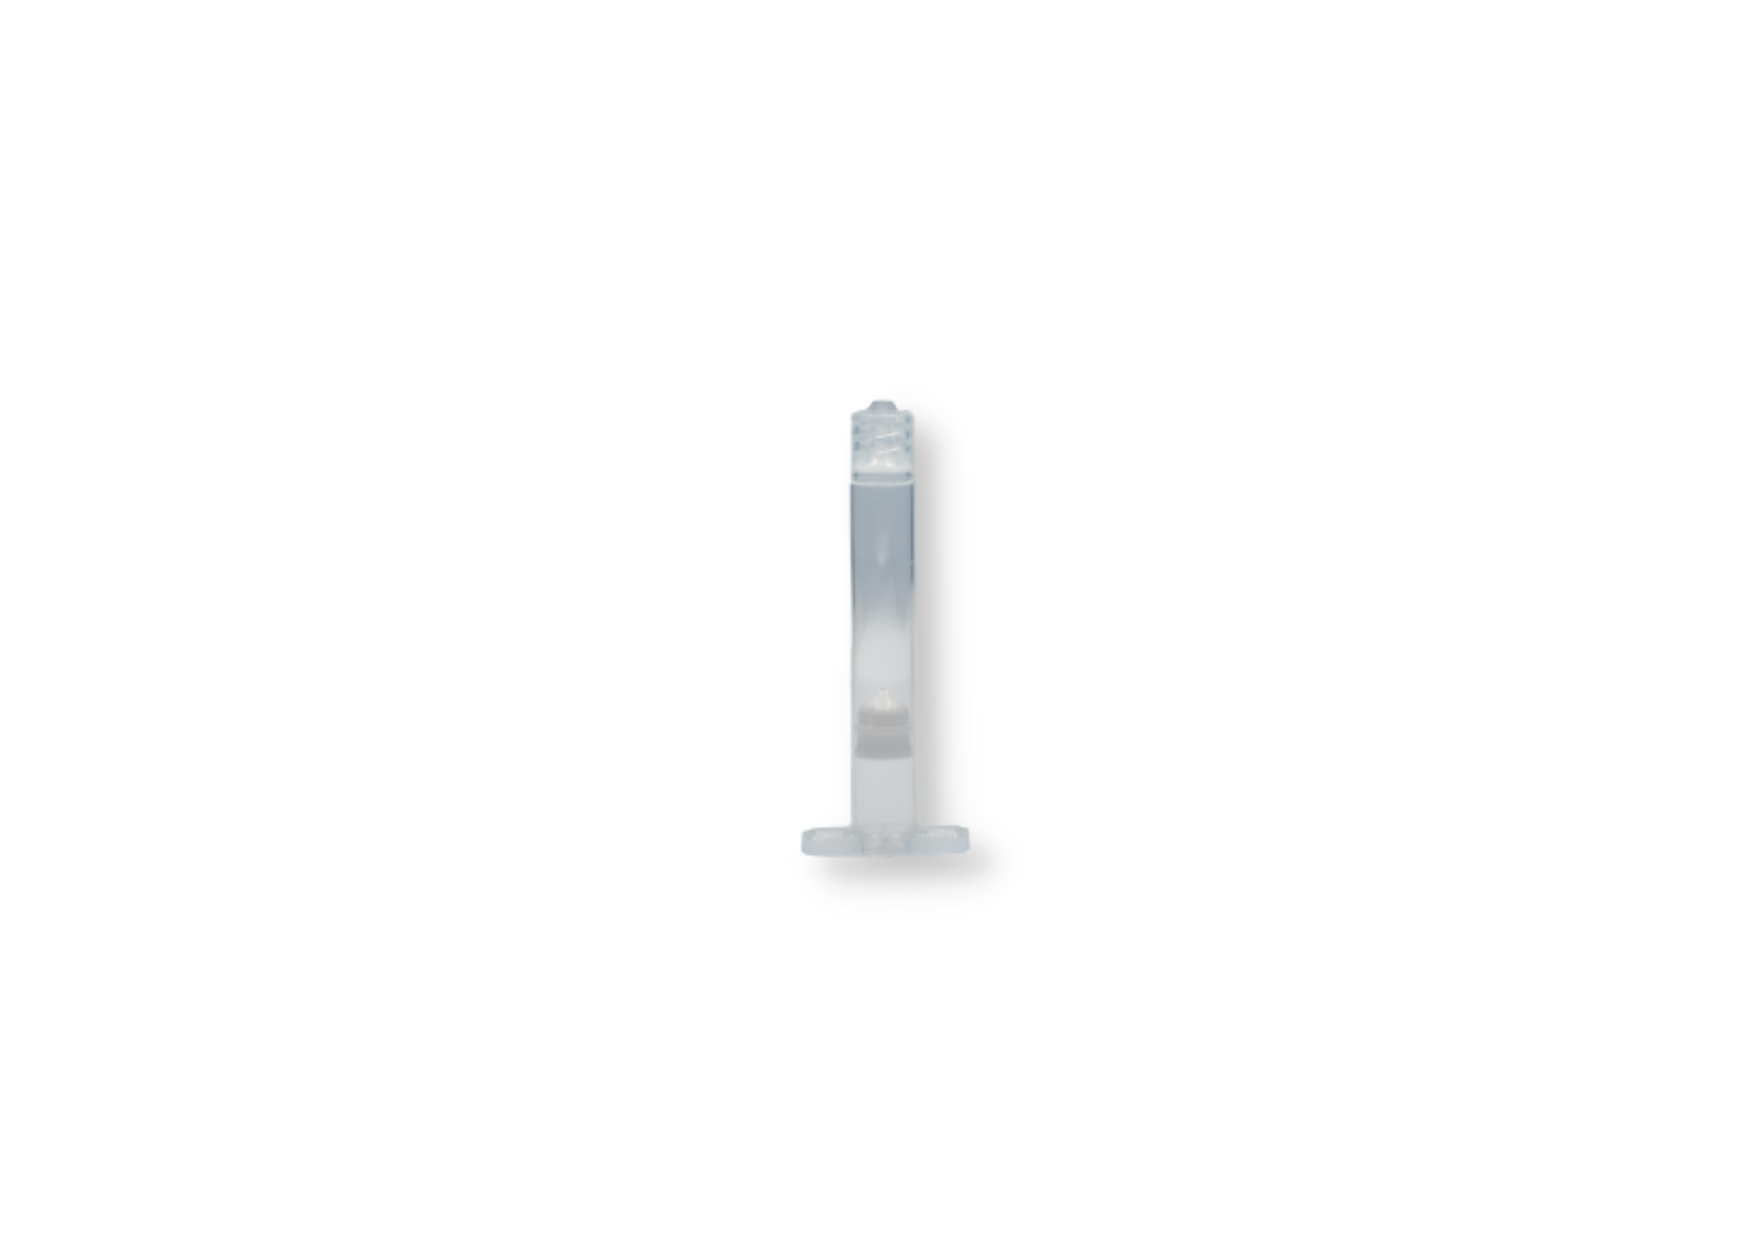 3 cc transparent polyethylene and polypropylene syringe, piston included (50 units)